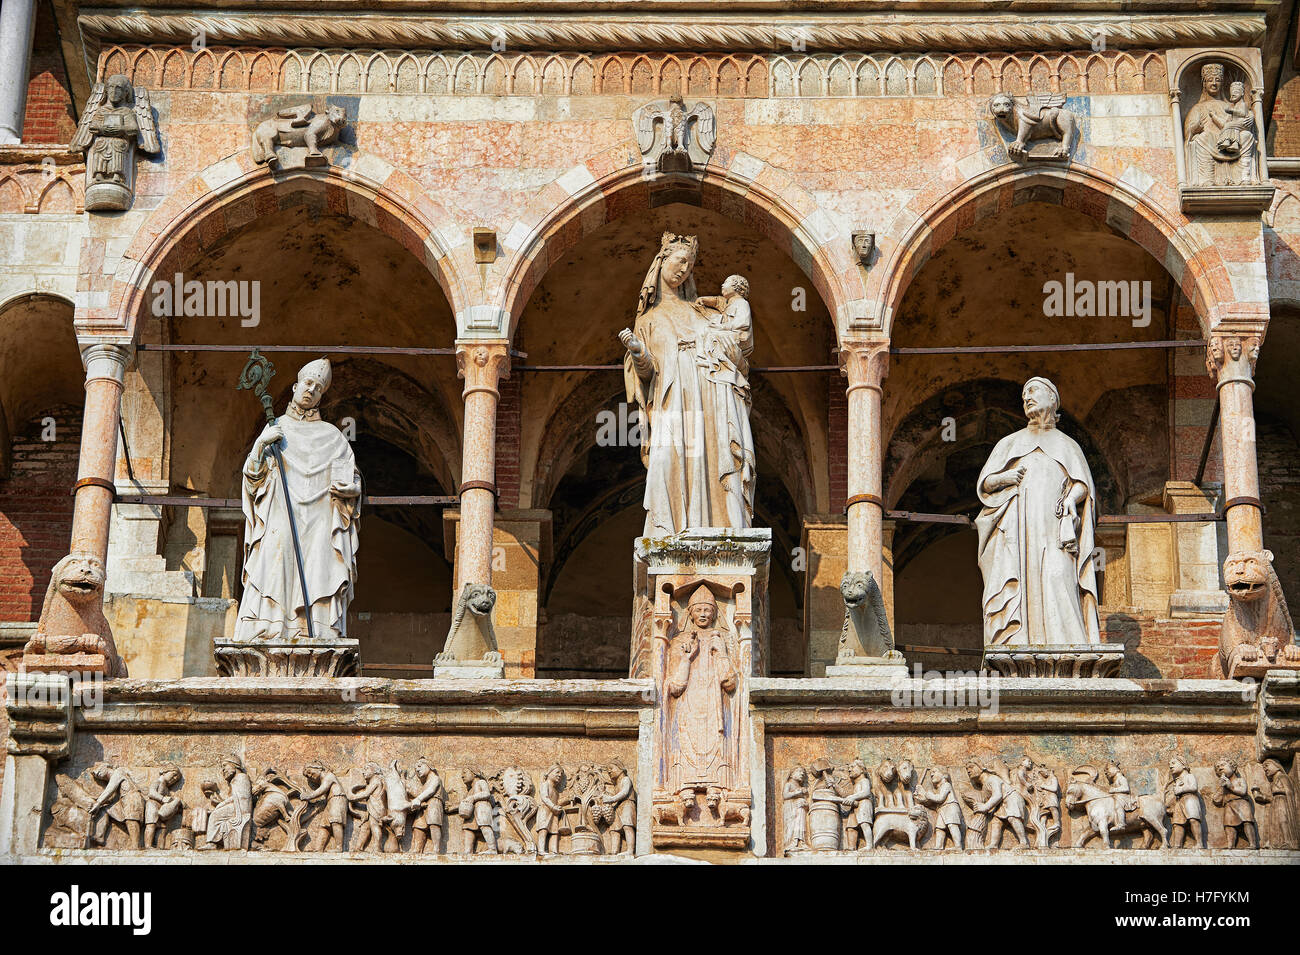 Statue de la Modonna avec enfant sur la façade de la cathédrale romane de Crémone, commencé 1107, avec plus tard, Gothique Renaissan Banque D'Images